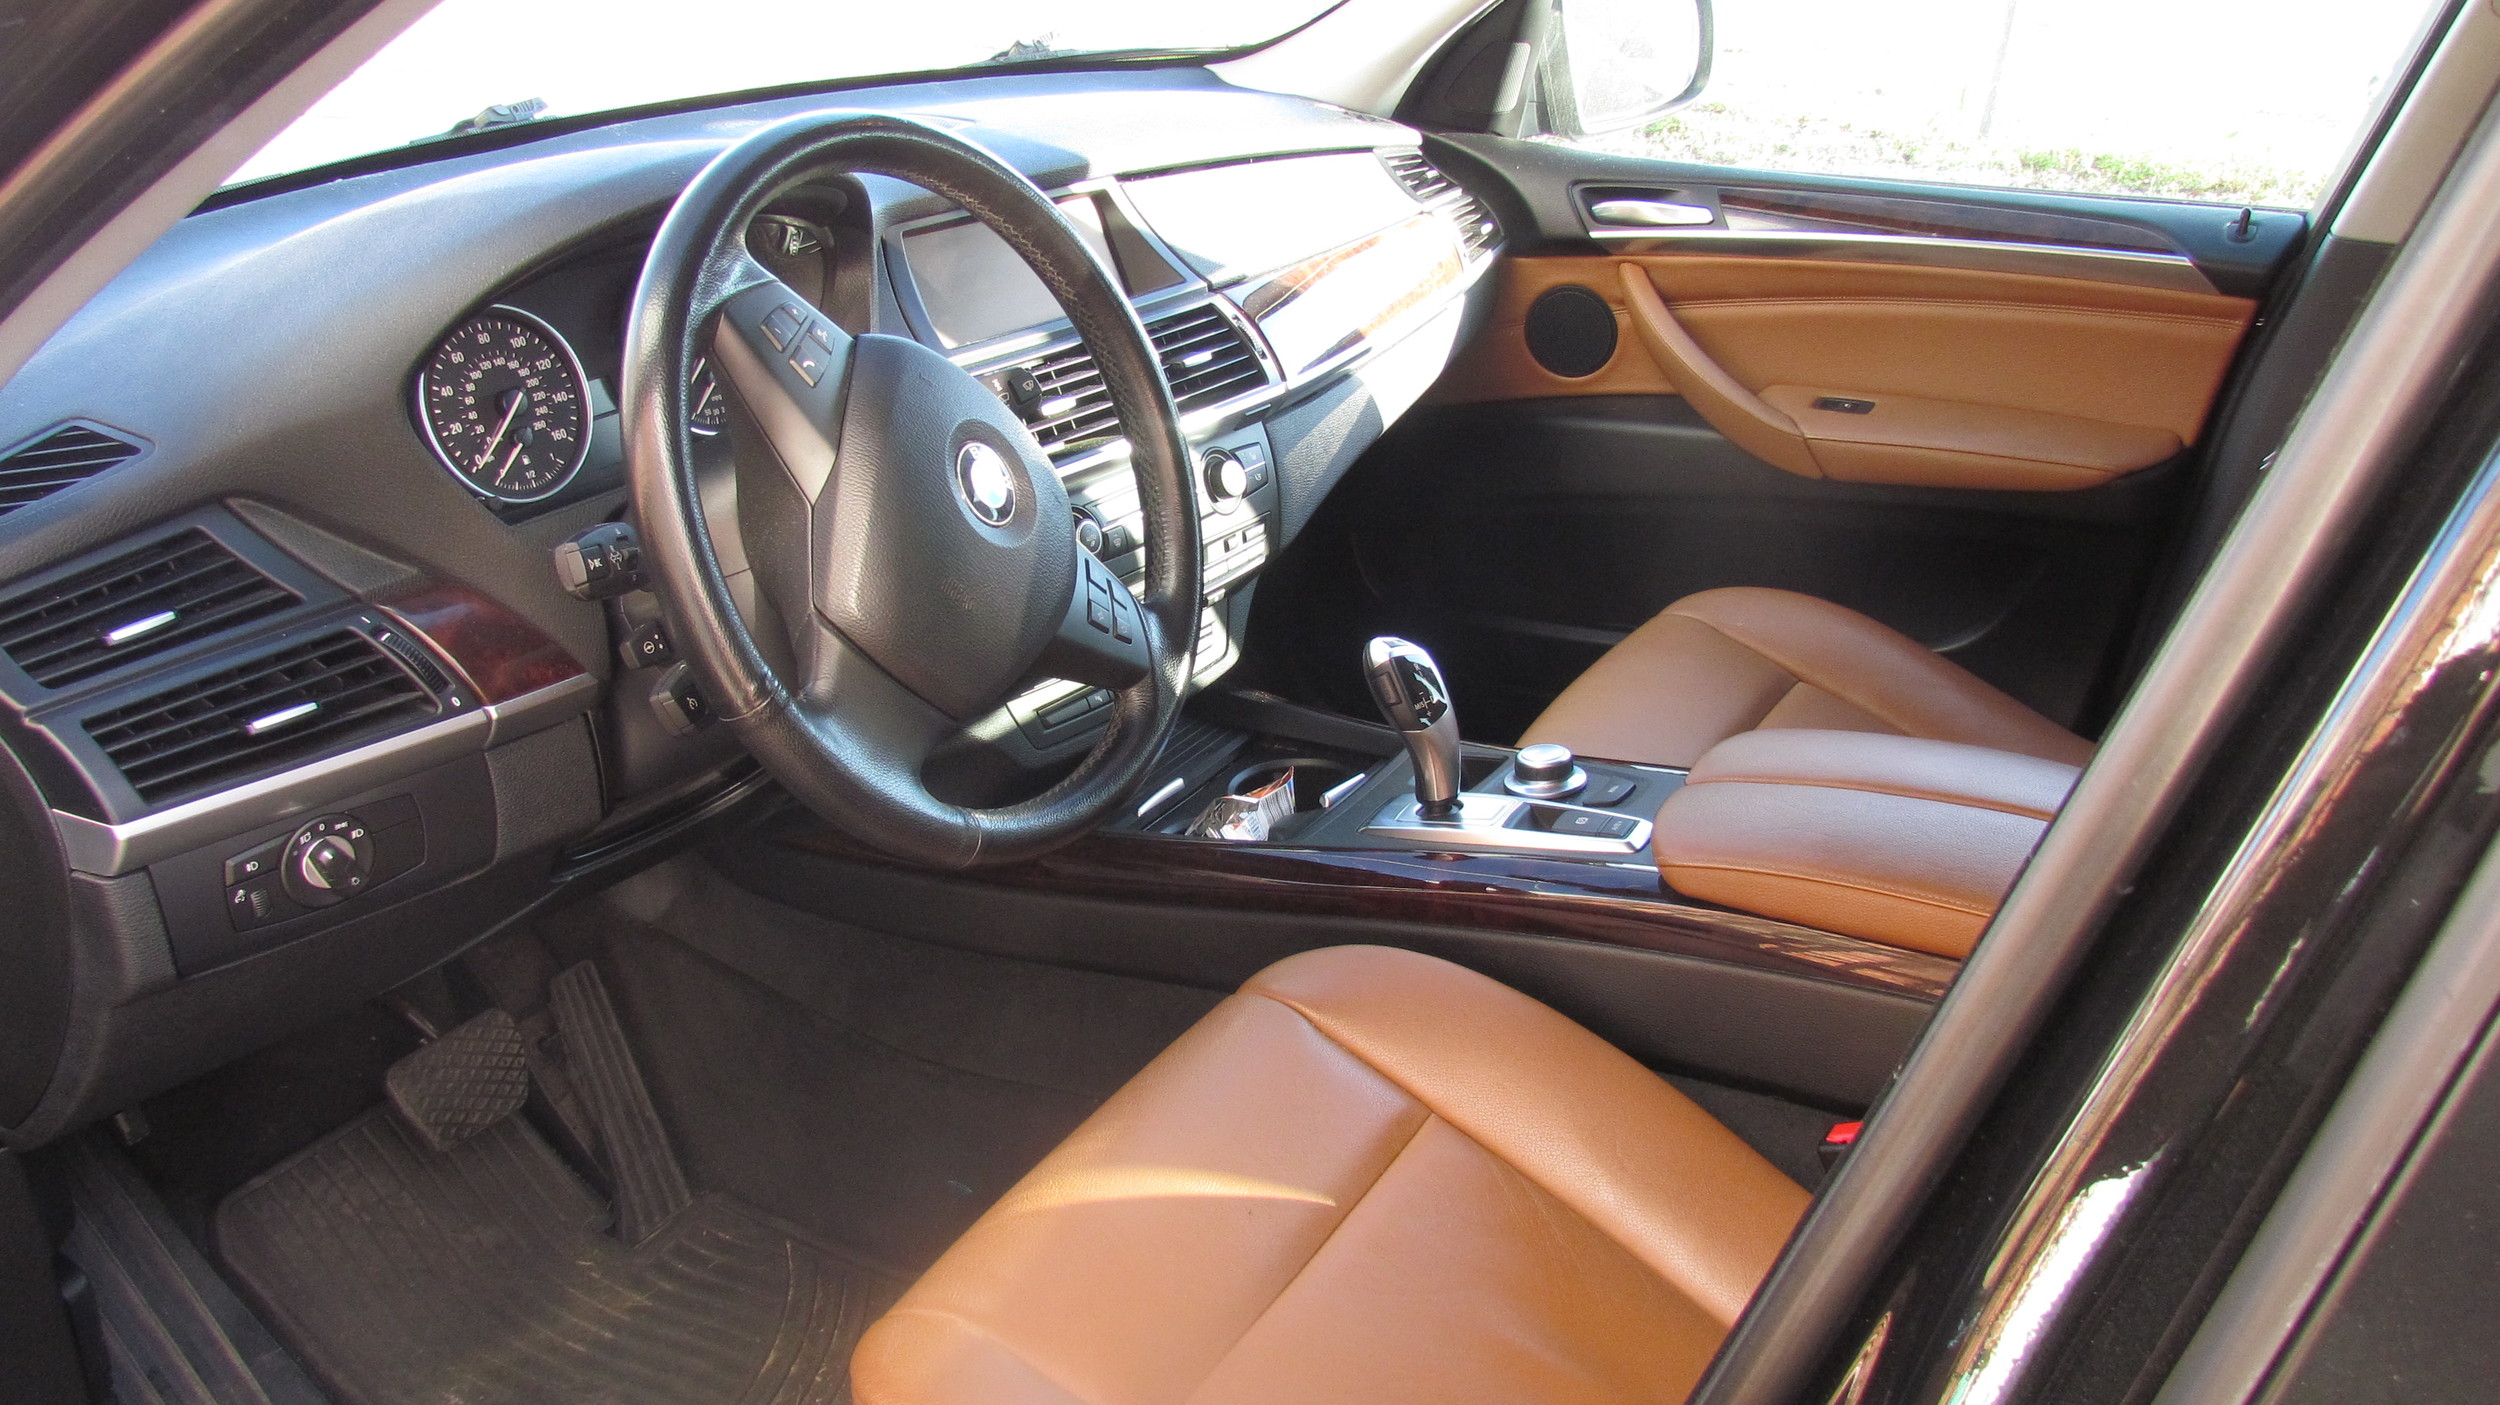 BMW X5 (New Car Slate)